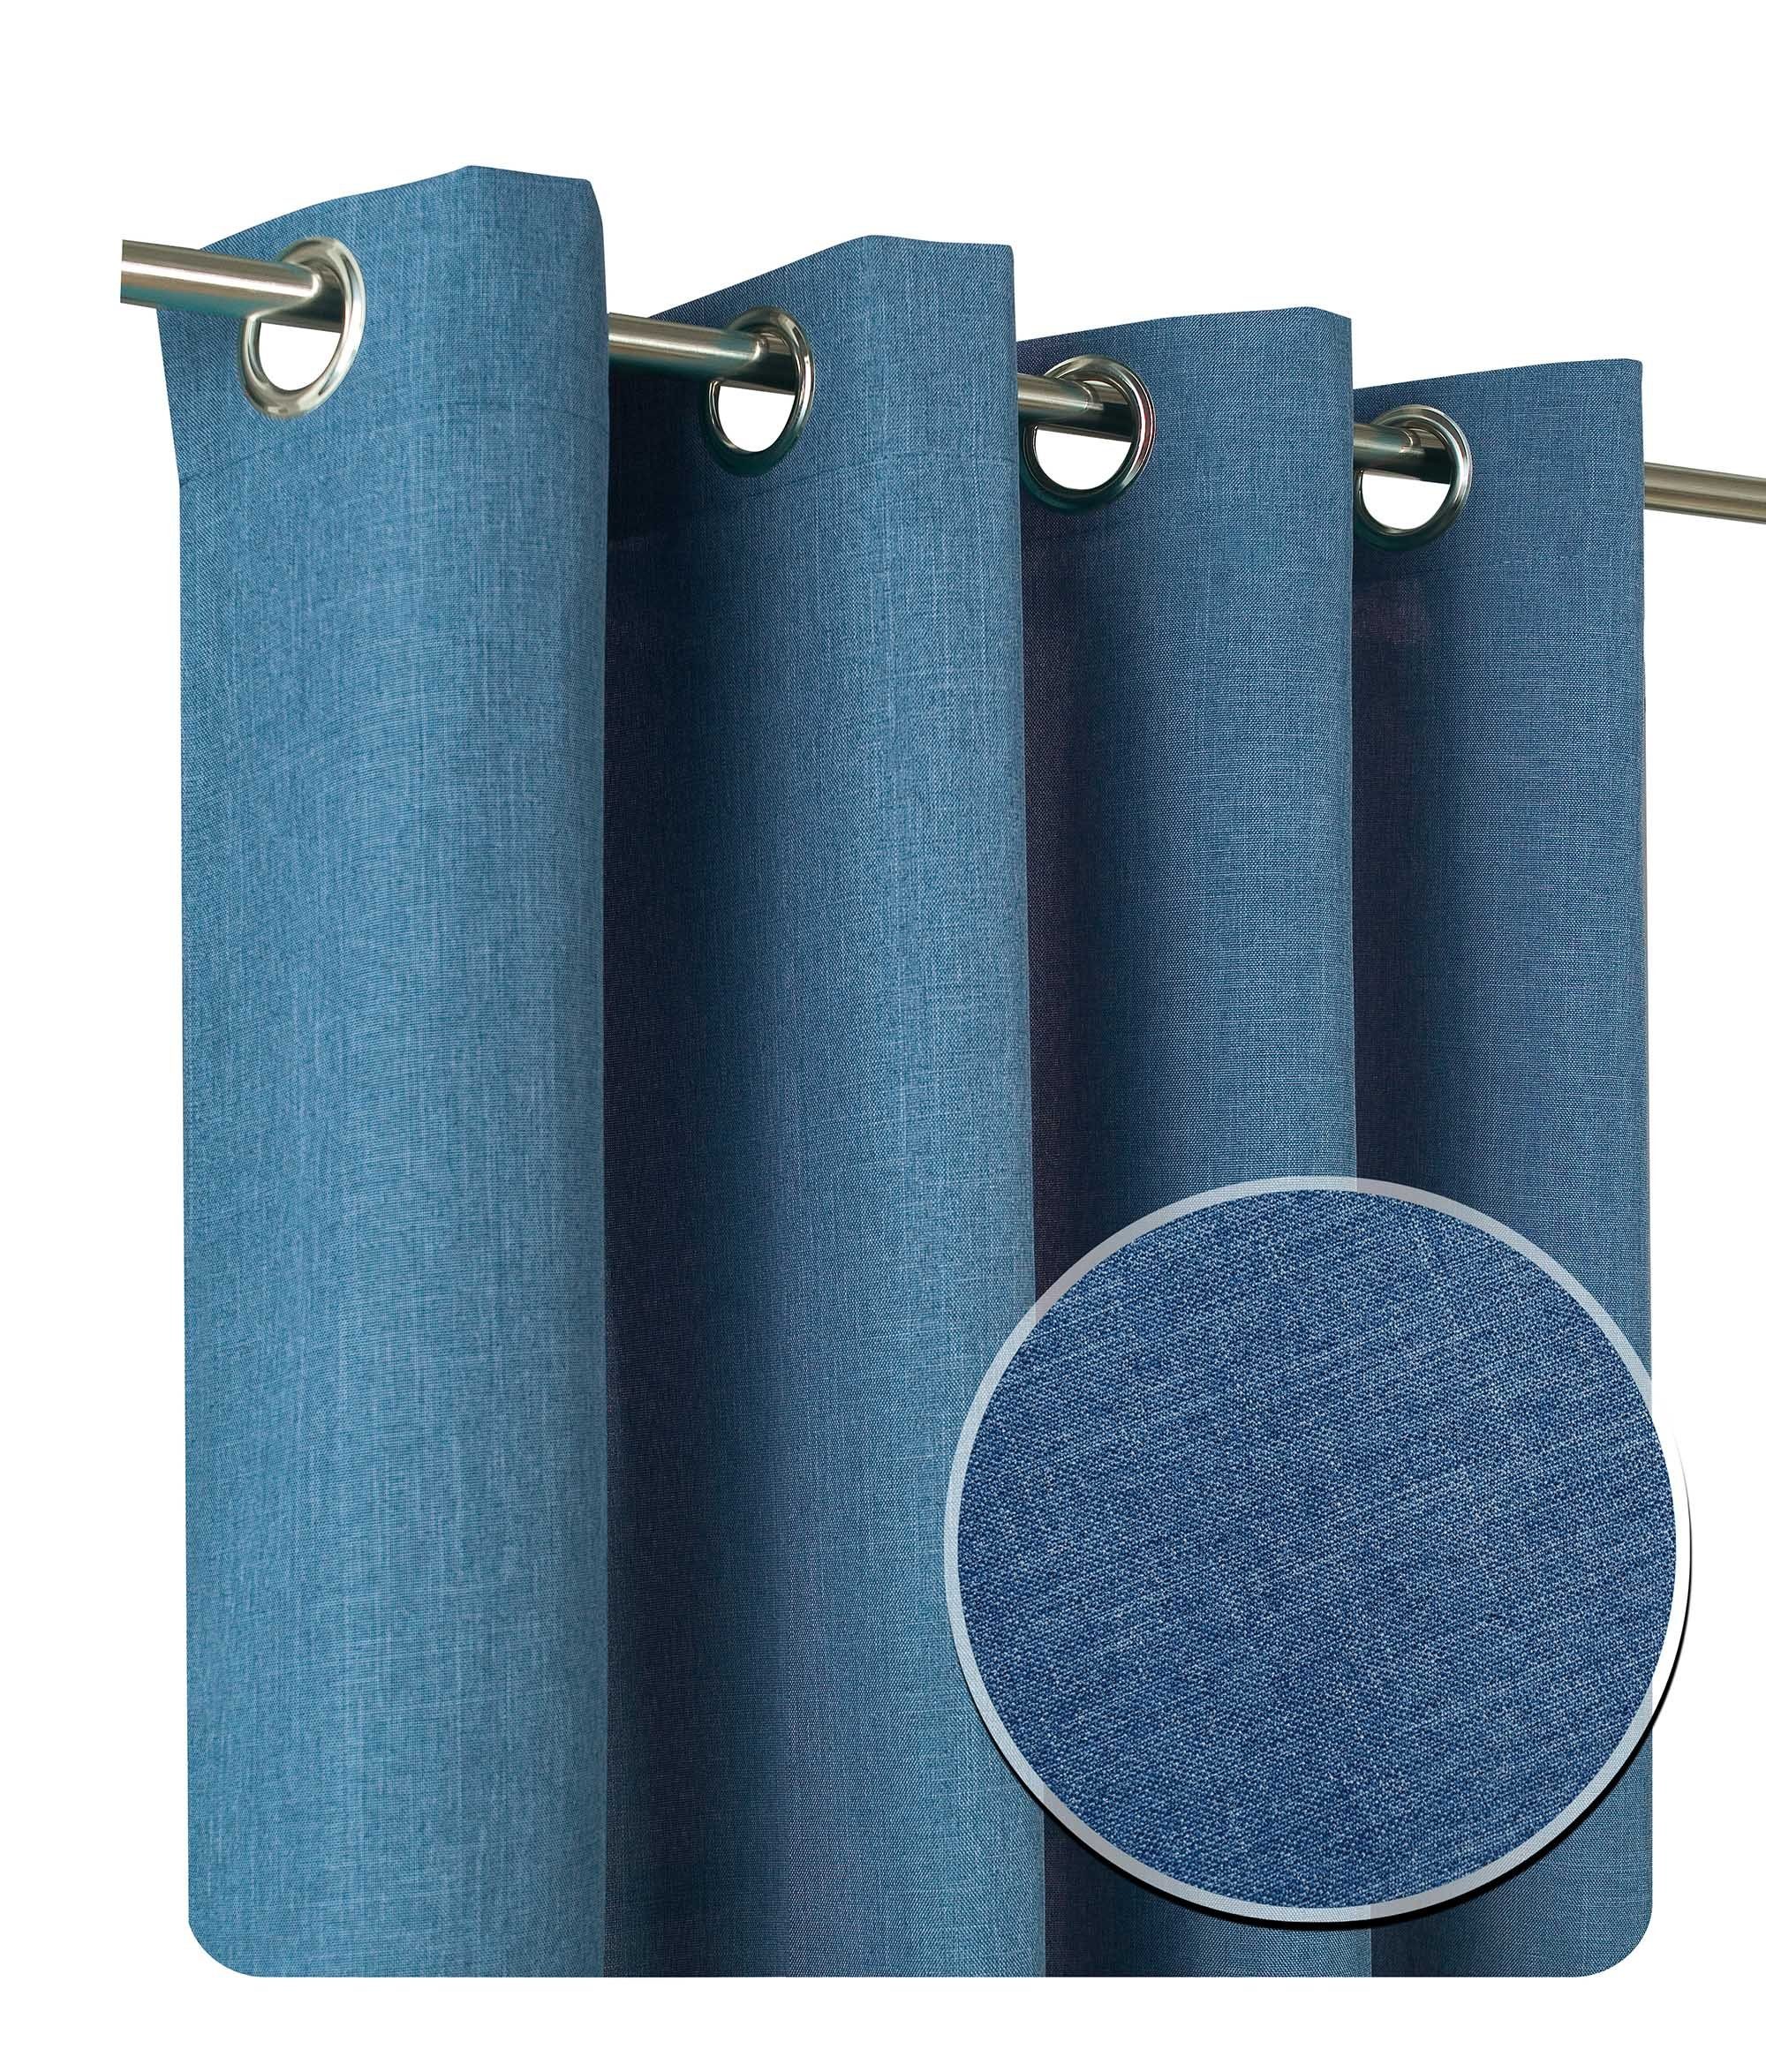 Ösen 2er und Haus Leinenoptik blickdicht, blickdicht Blau Set Polyester Vorhang Deko, St), (2 uni, Ösen 140x245 cm Struktur Gardine